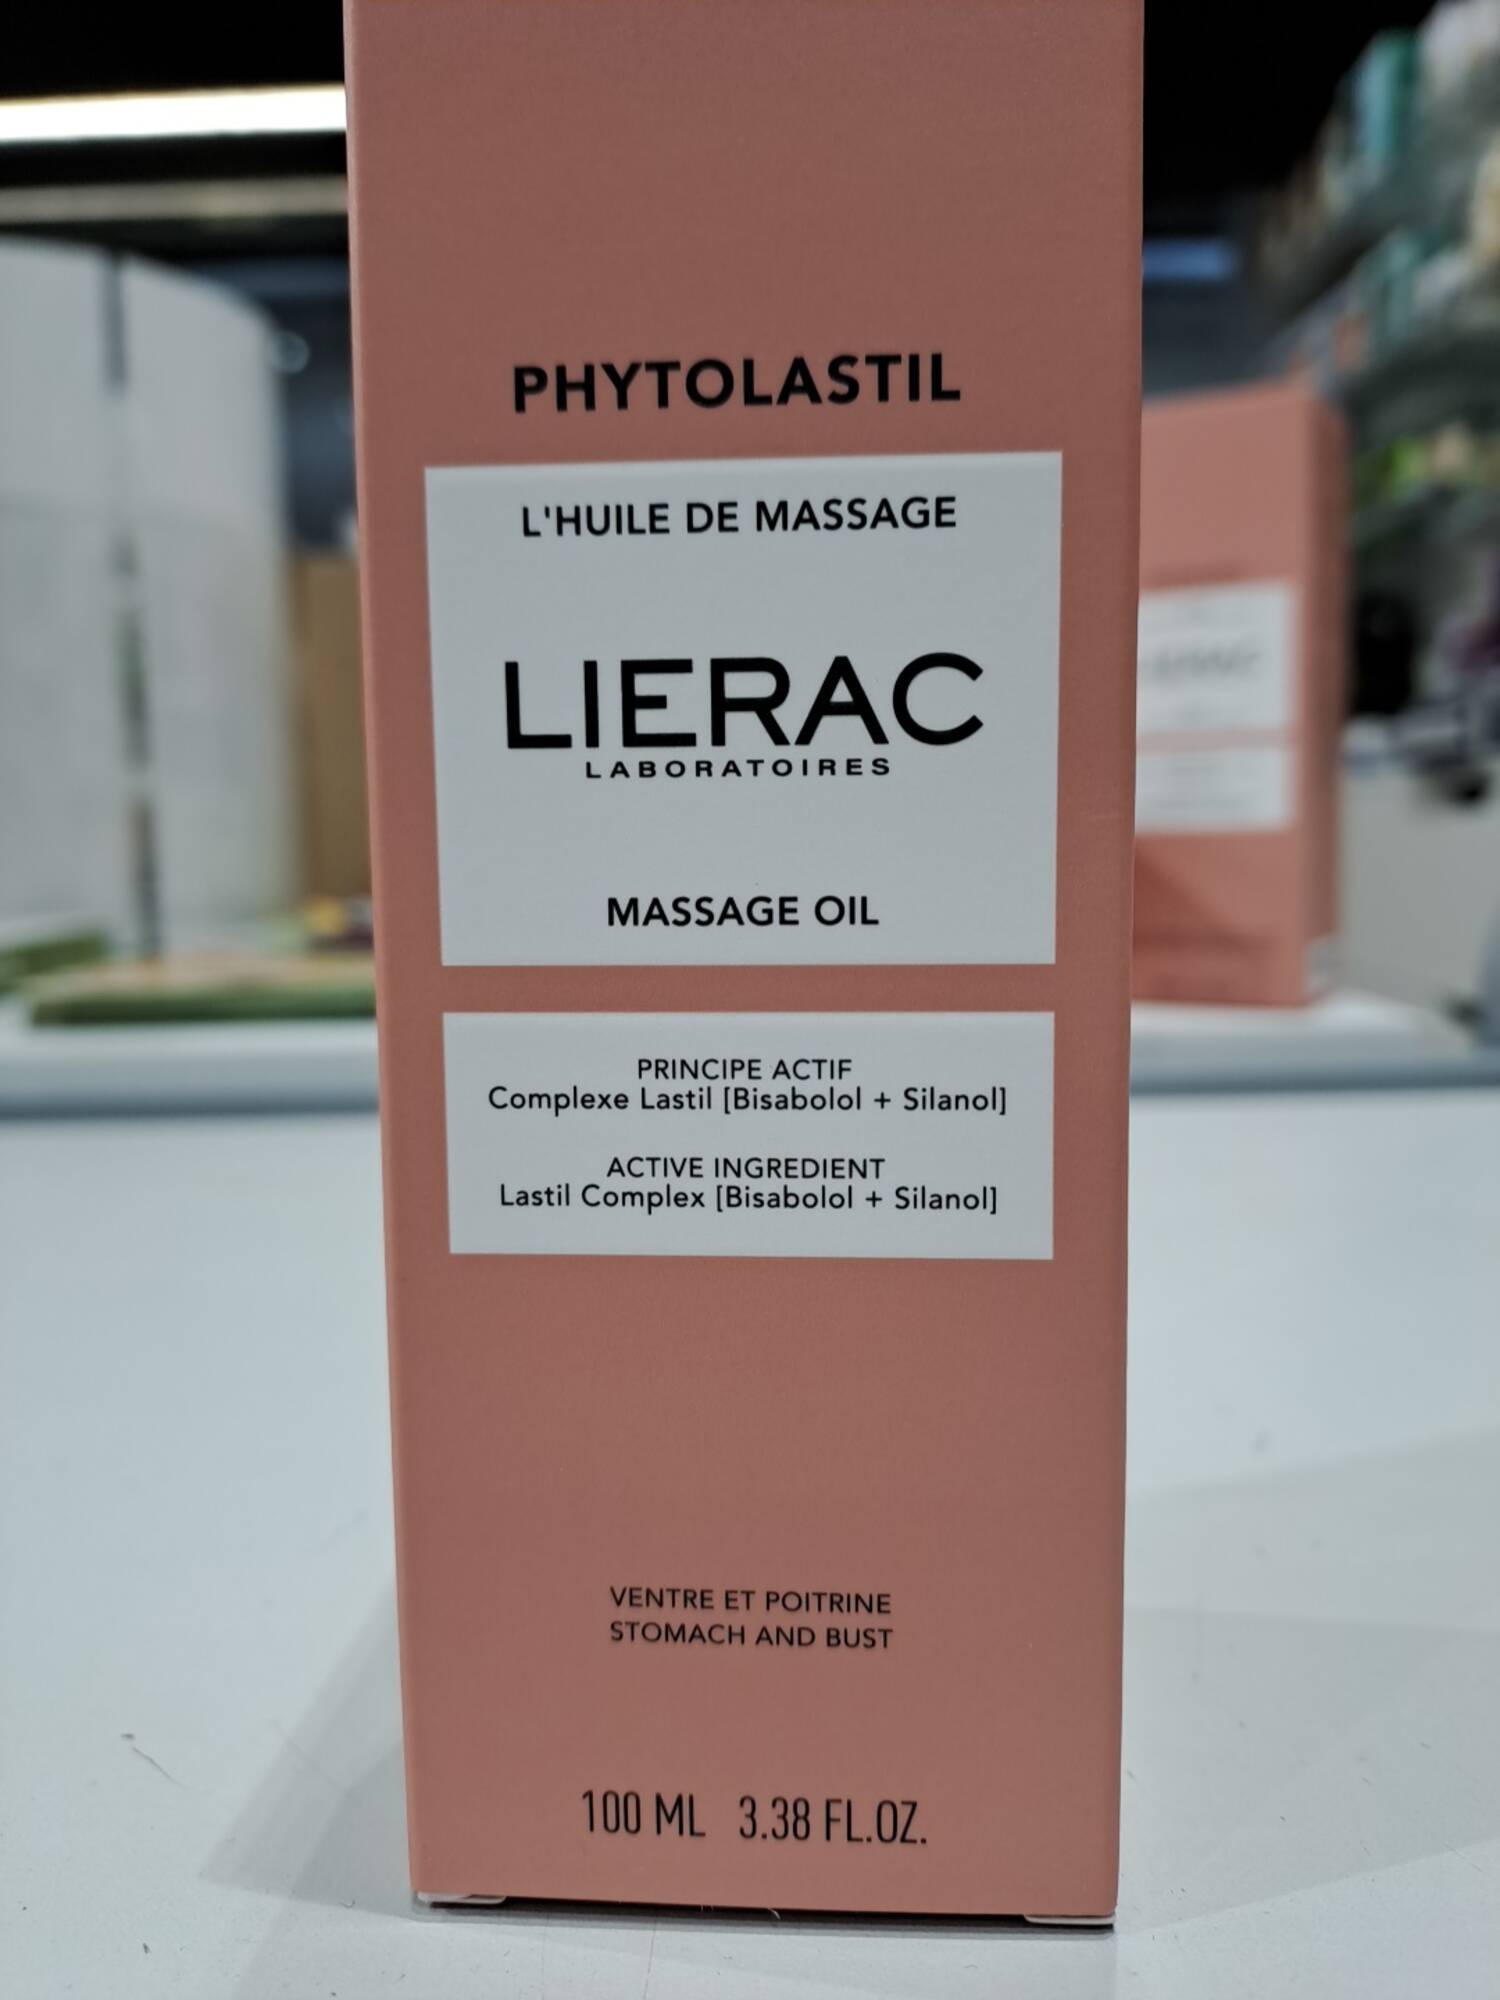 LIÉRAC - Phytolastil - Huile massage 